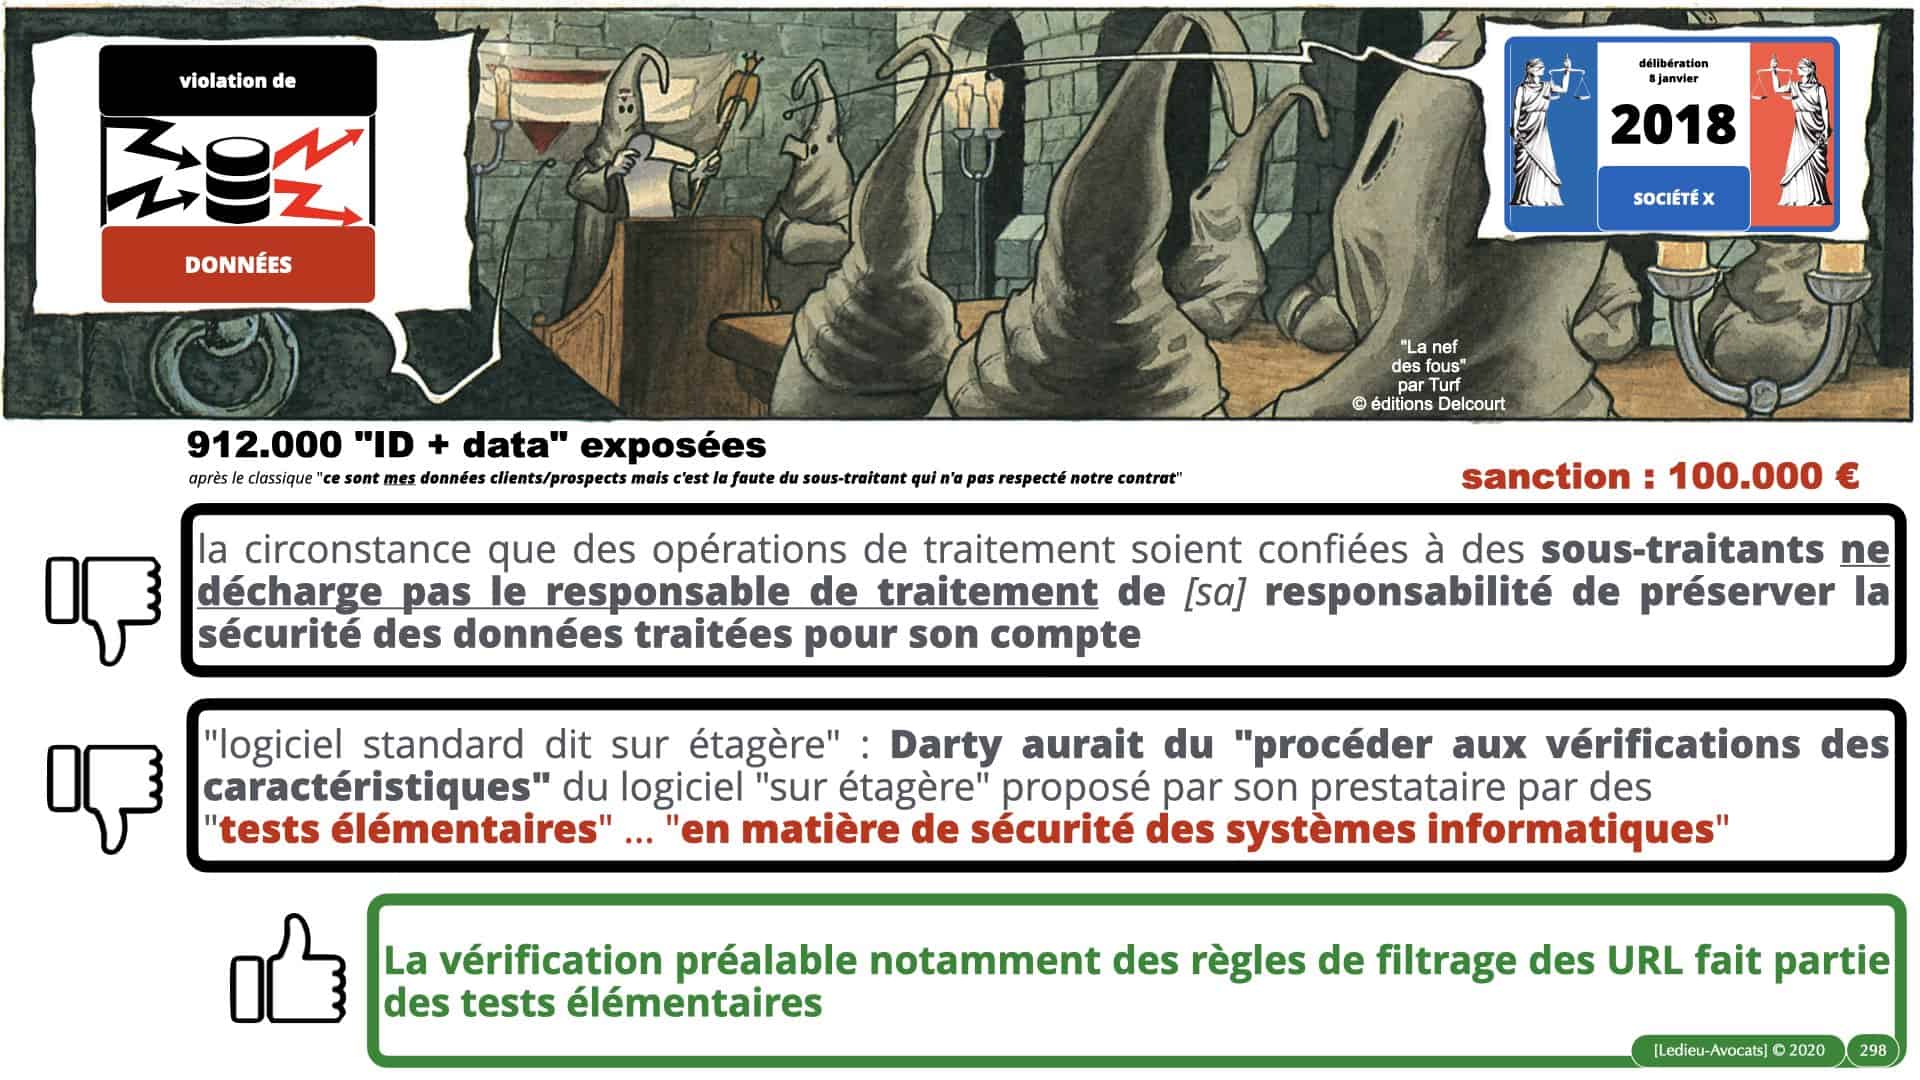 RGPD e-Privacy données personnelles jurisprudence formation Lamy Les Echos 10-02-2021 ©Ledieu-Avocats.298